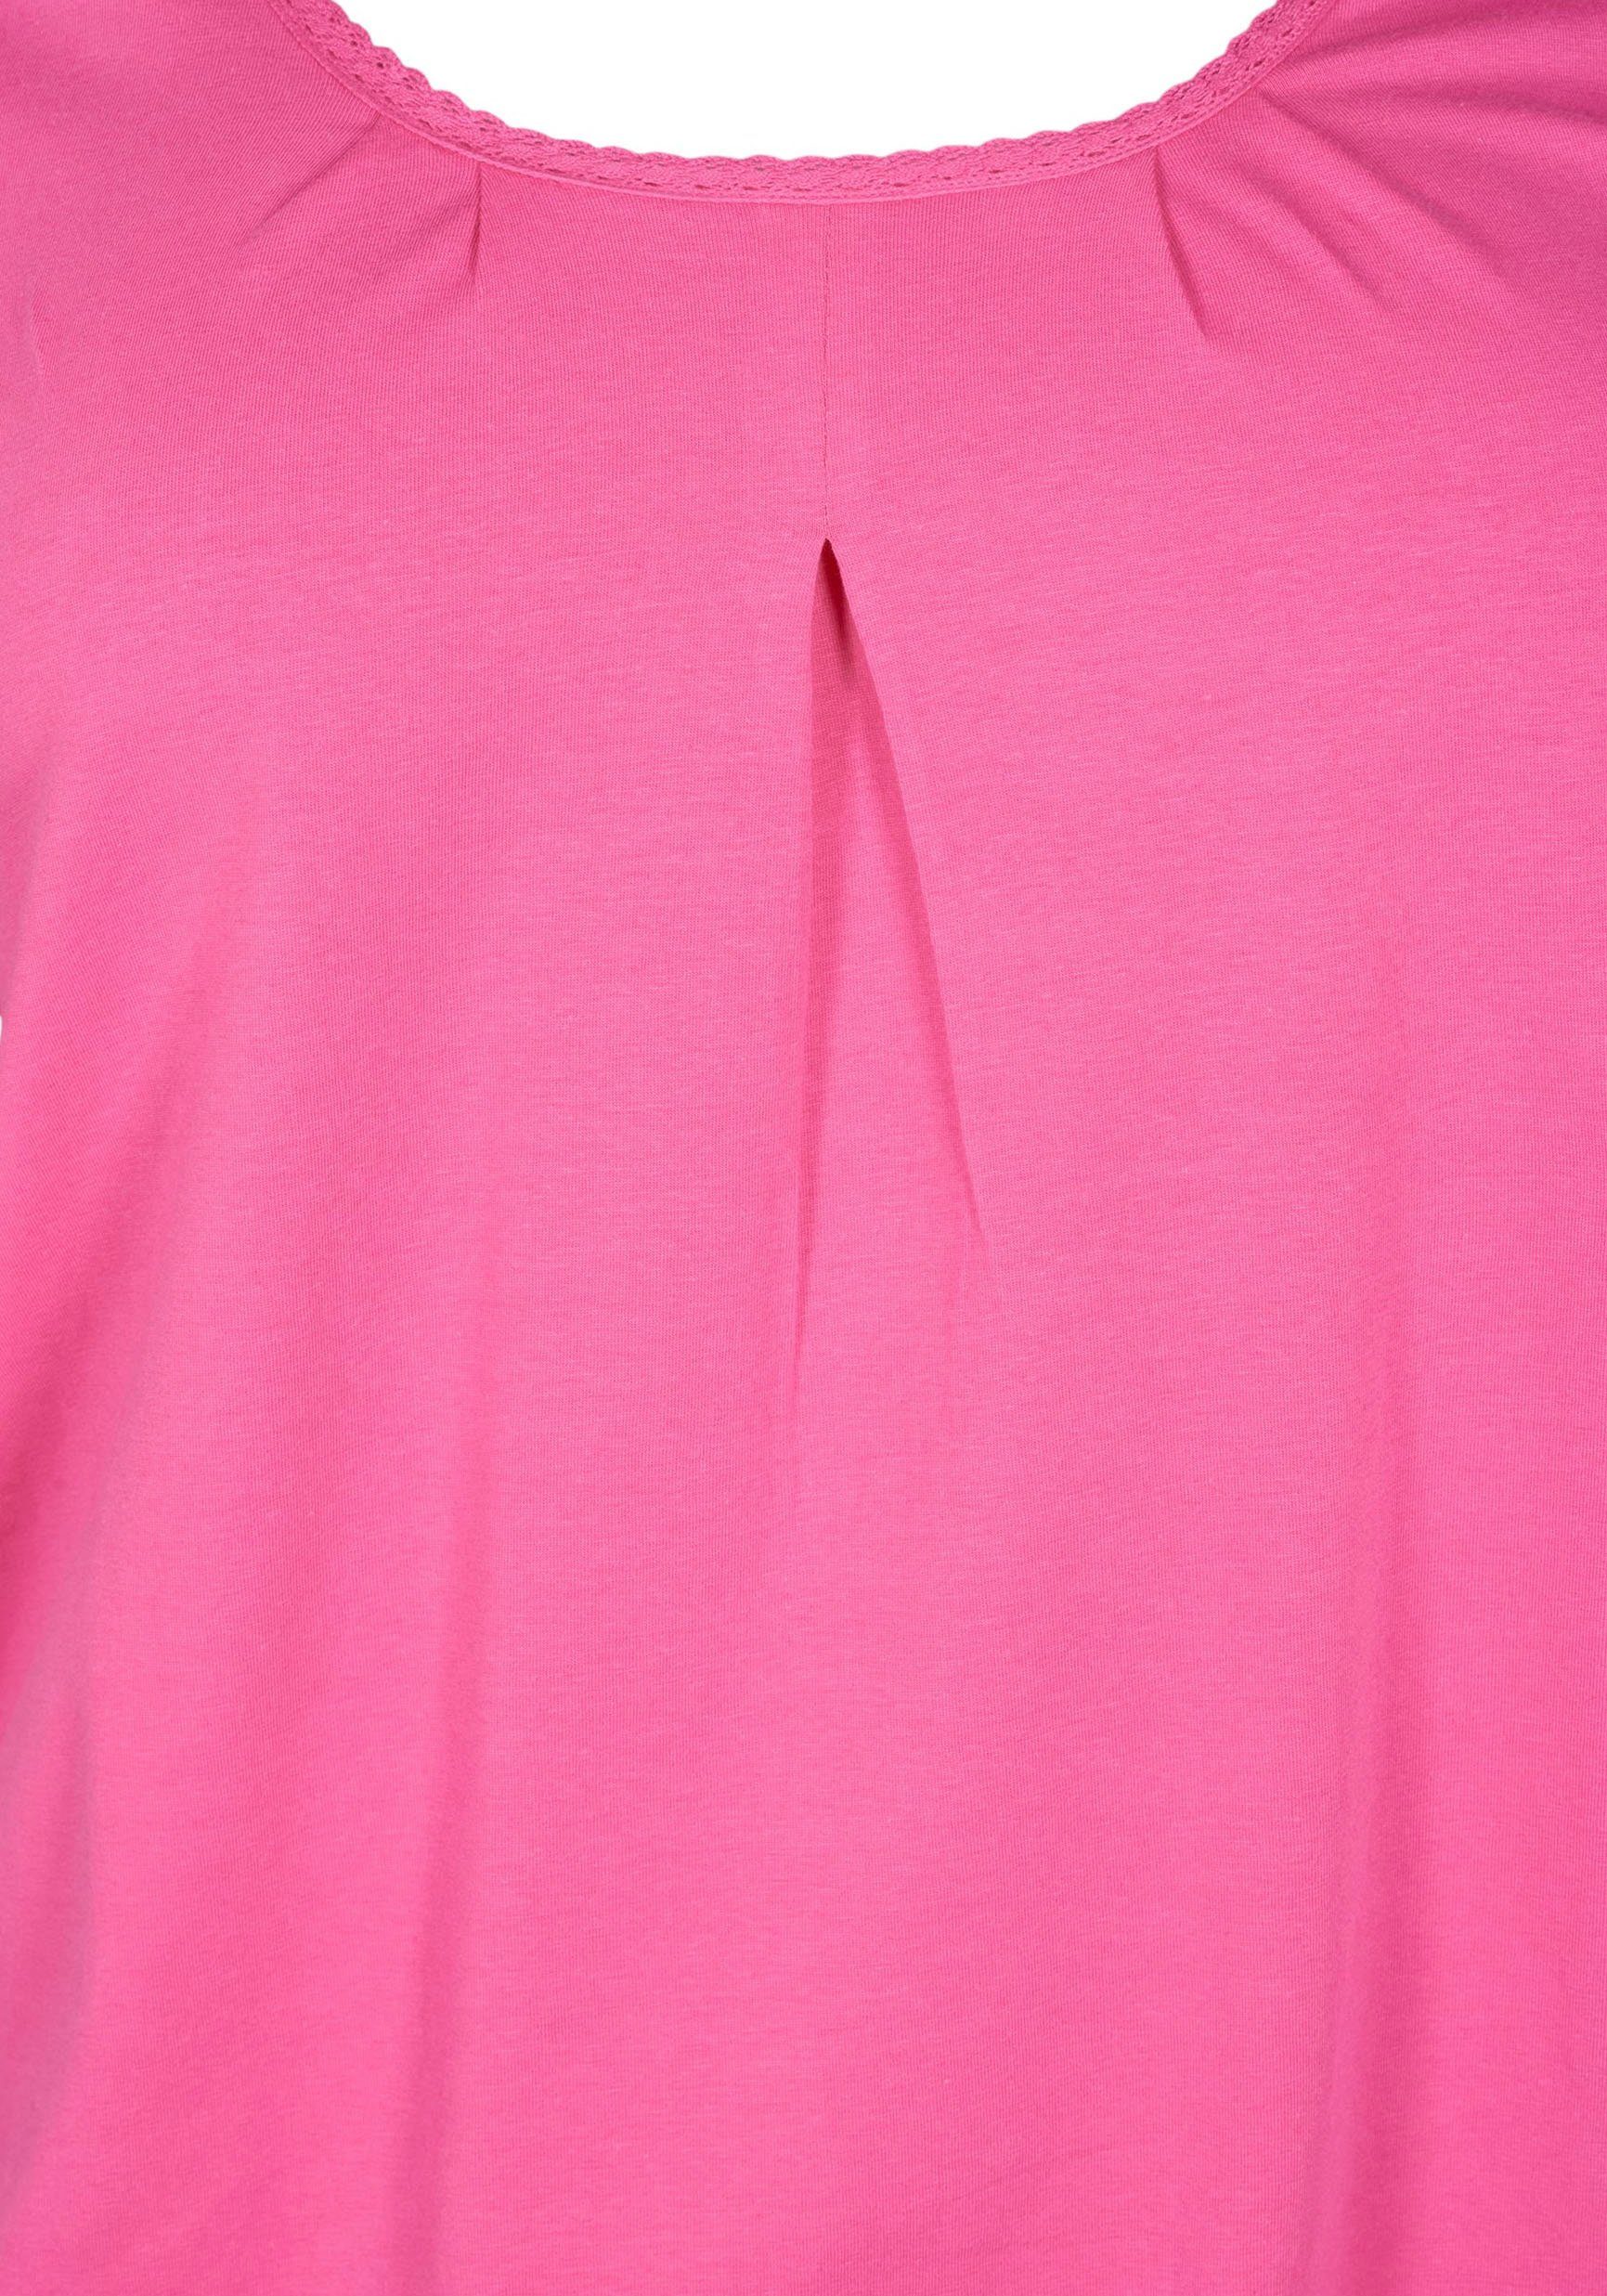 Zizzi Shocking Pink T-Shirt VPOLLY Zizzi